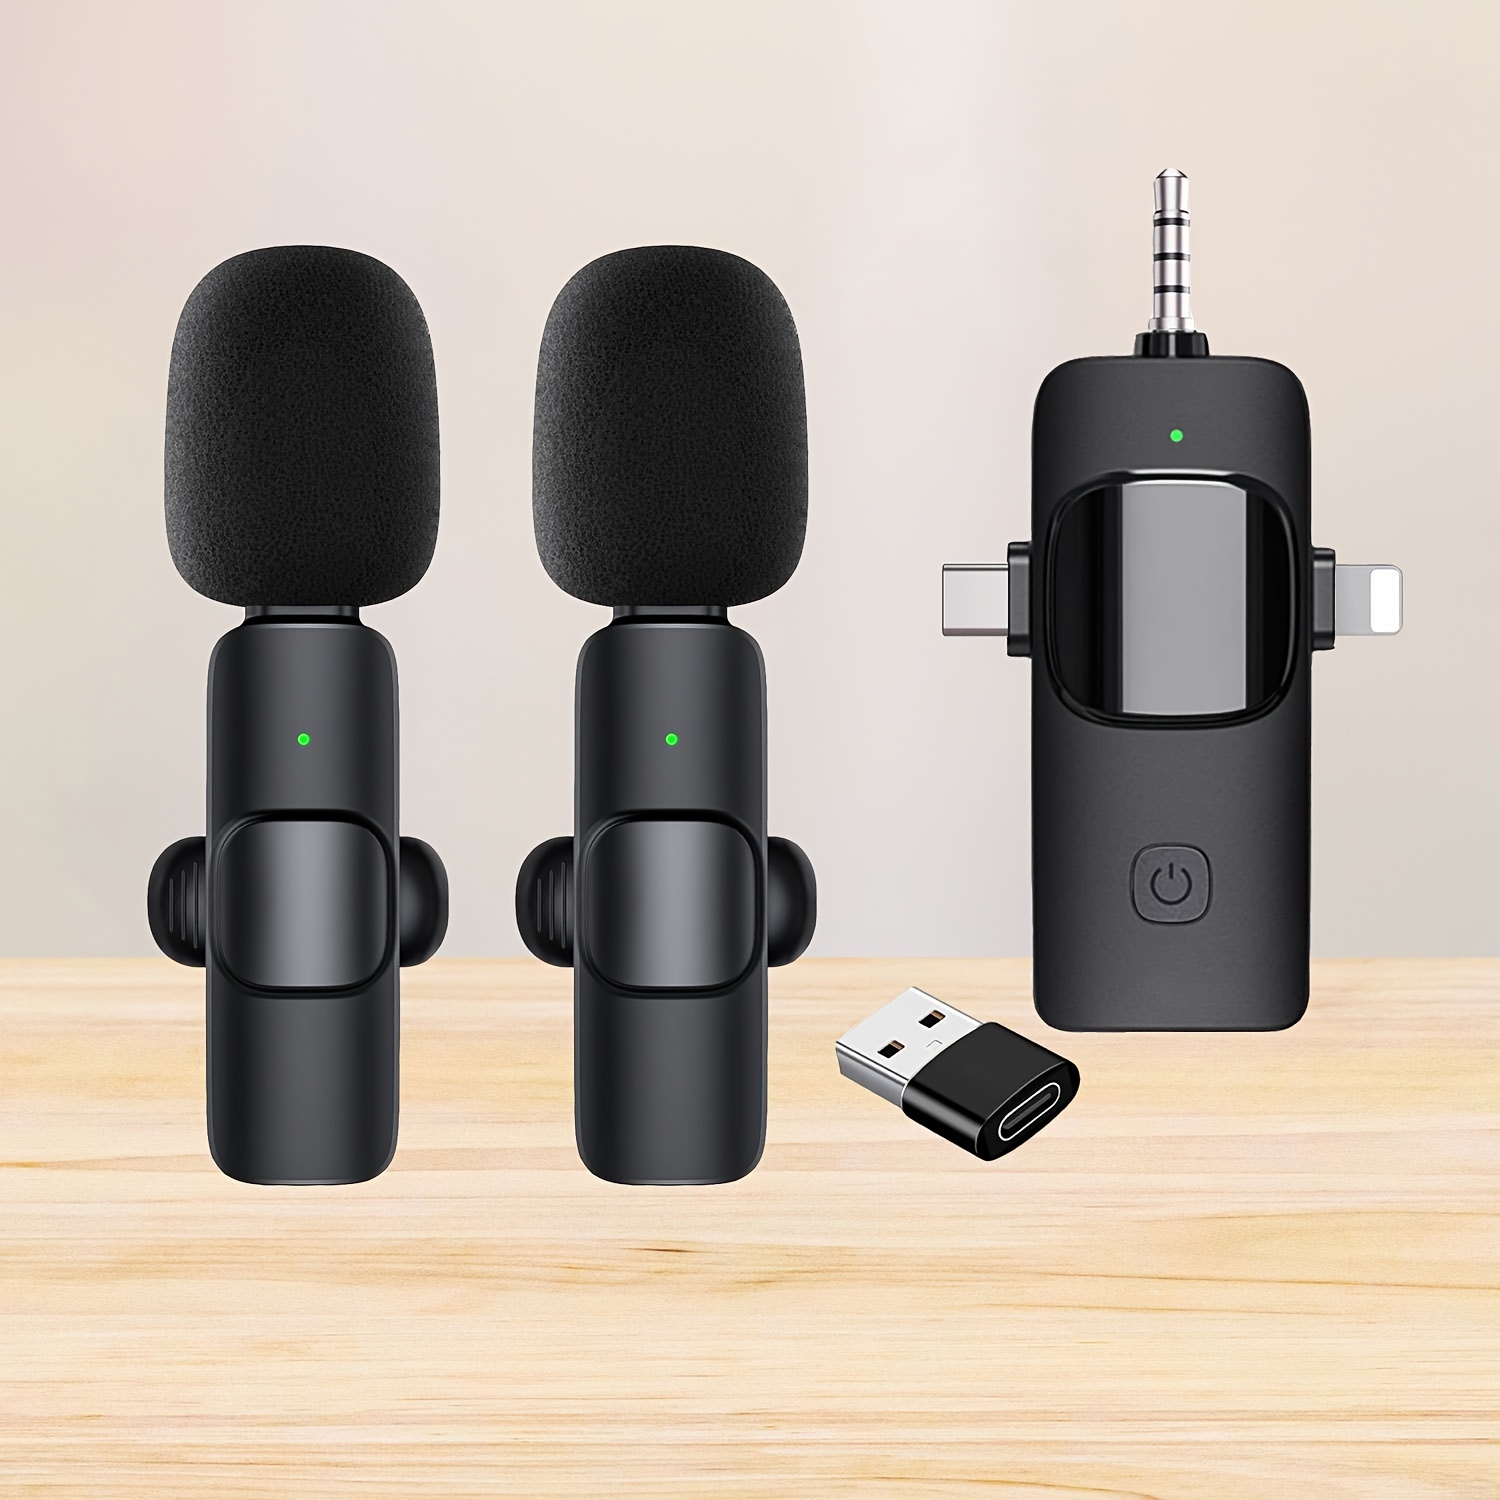 Microphone cravate sans fil pour iPhone et téléphone portable